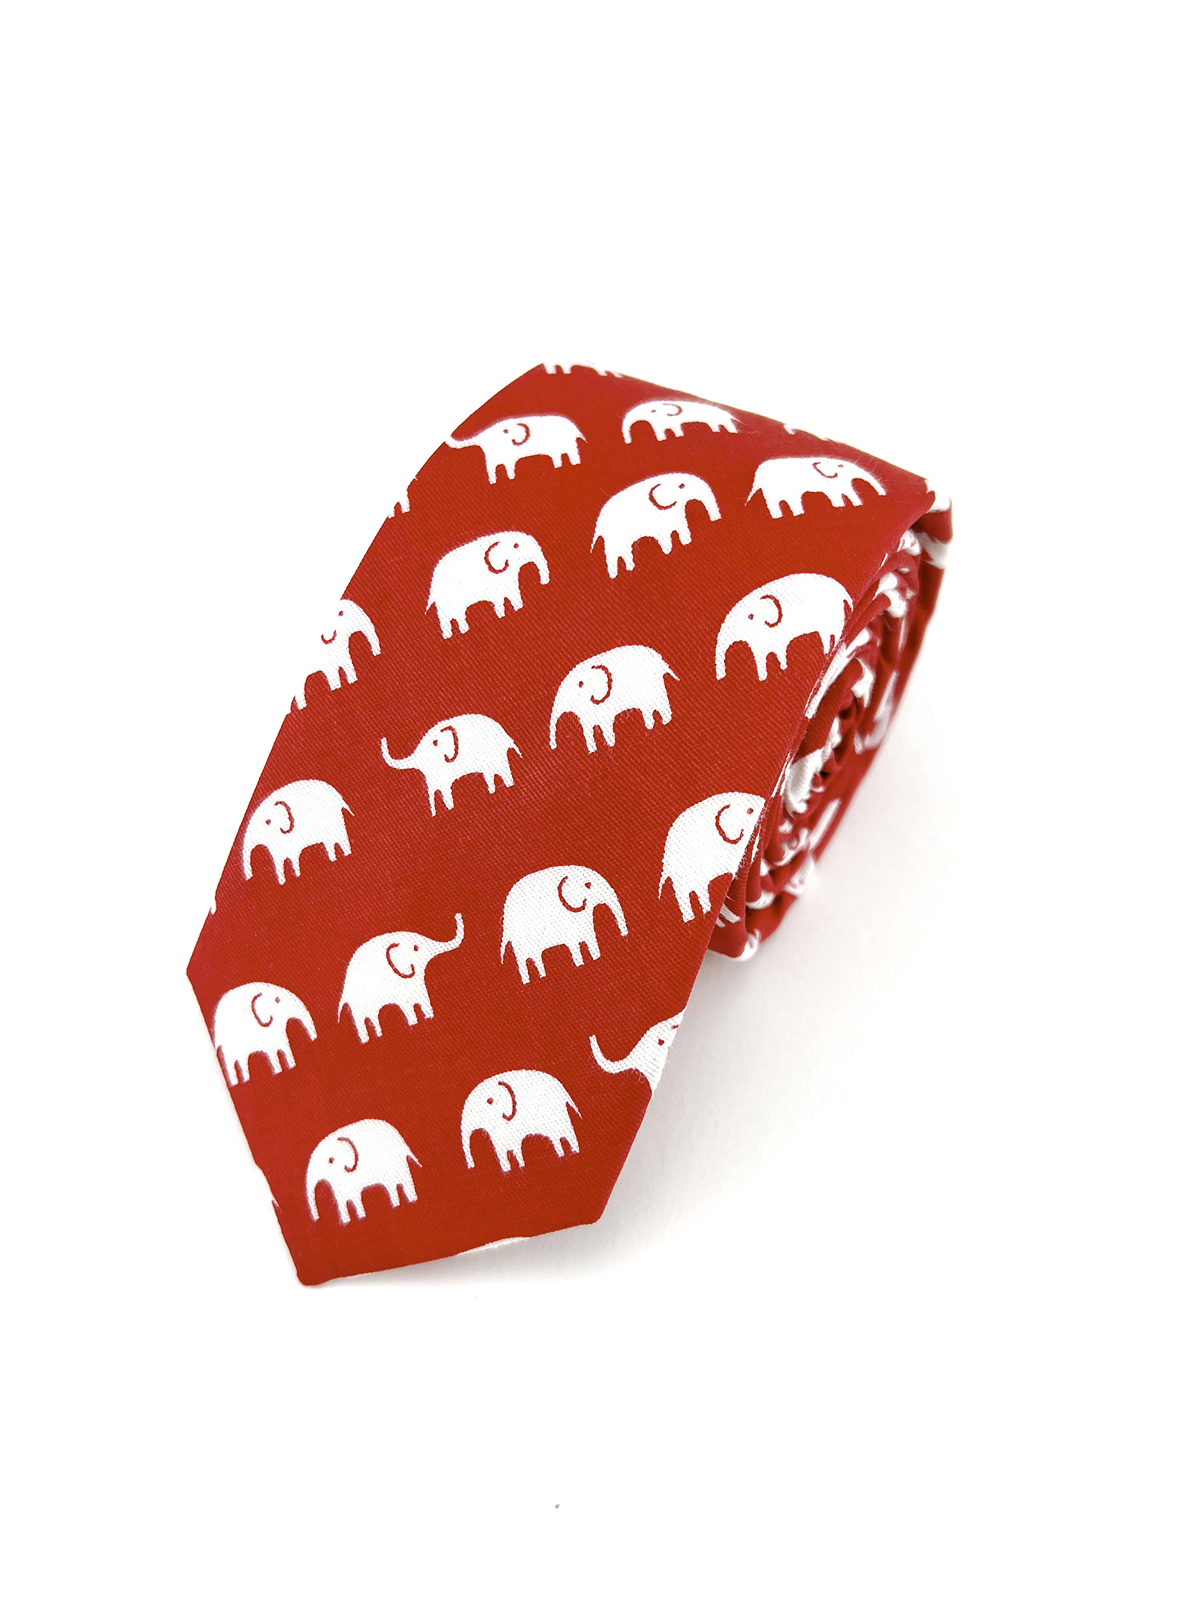 Галстук красный со слонами описание: Фасон - , Материал - Хлопок, Цвет - Красный, белый, Размер - 6 см х 145 см, Страна производства - Турция.